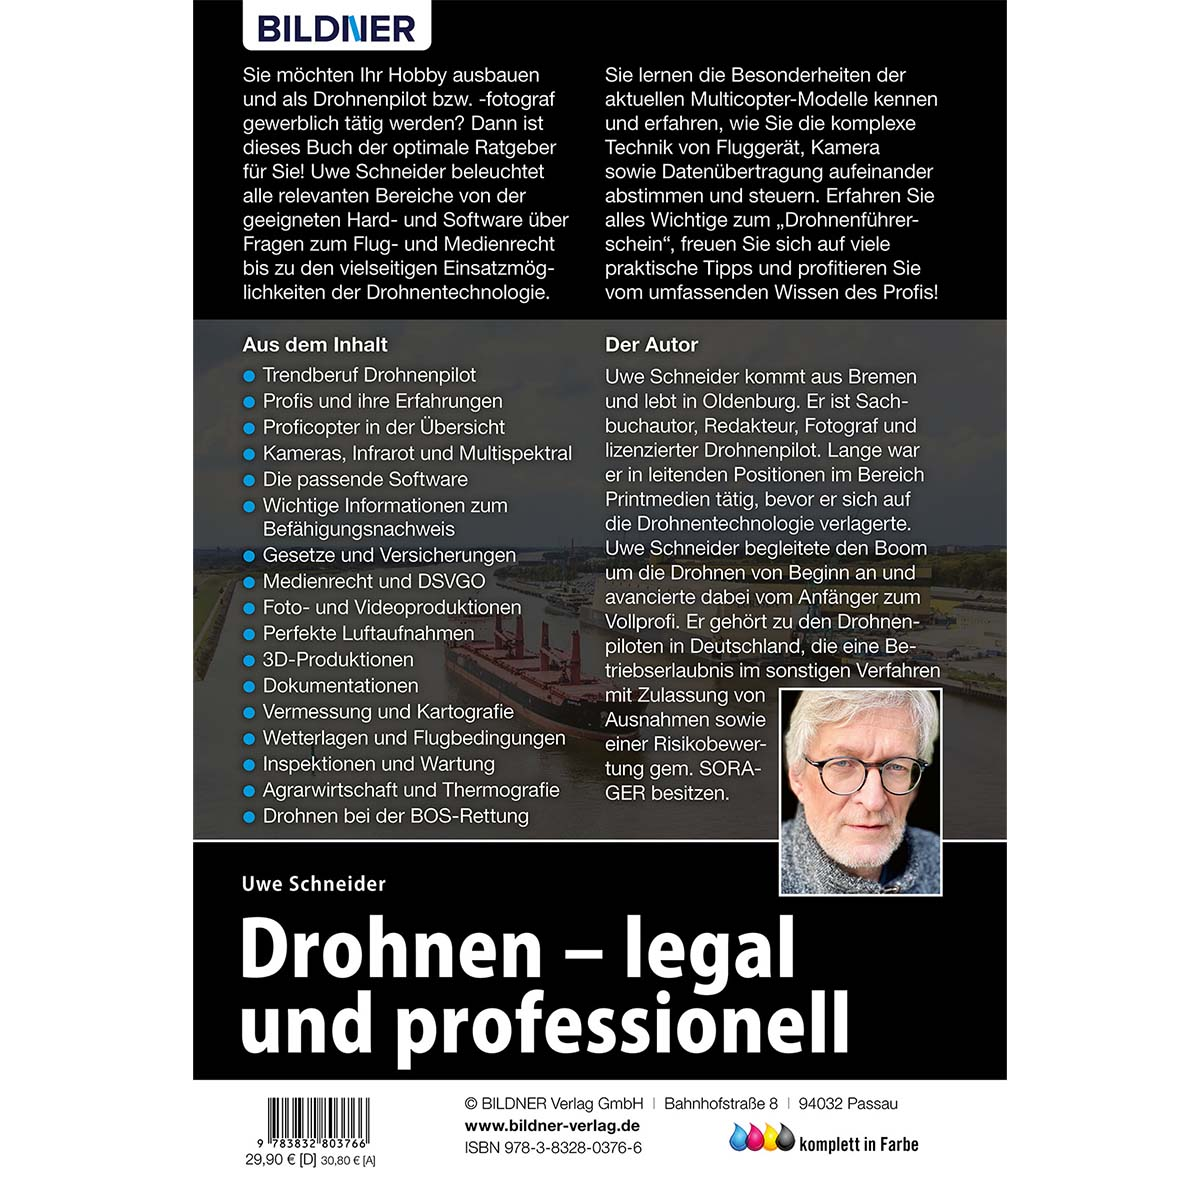 Drohnen - legal und professionell